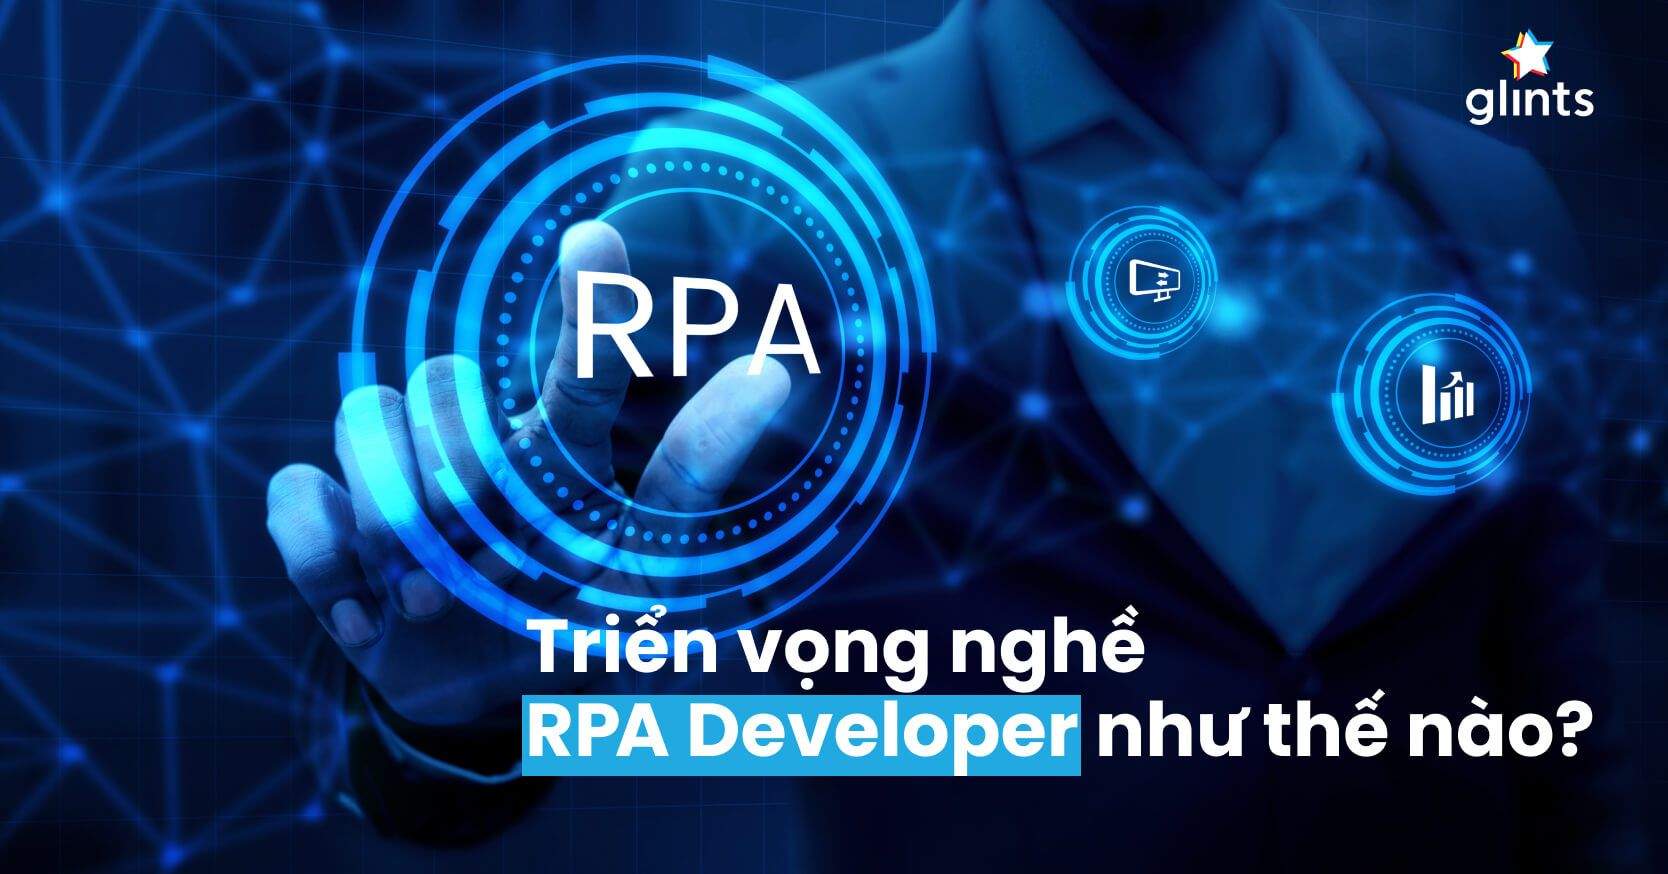 RPA Developer Là Gì? Nhà Tuyển Dụng Tìm Kiếm Gì Ở Một Ứng Viên RPA Developer Tiềm Năng?